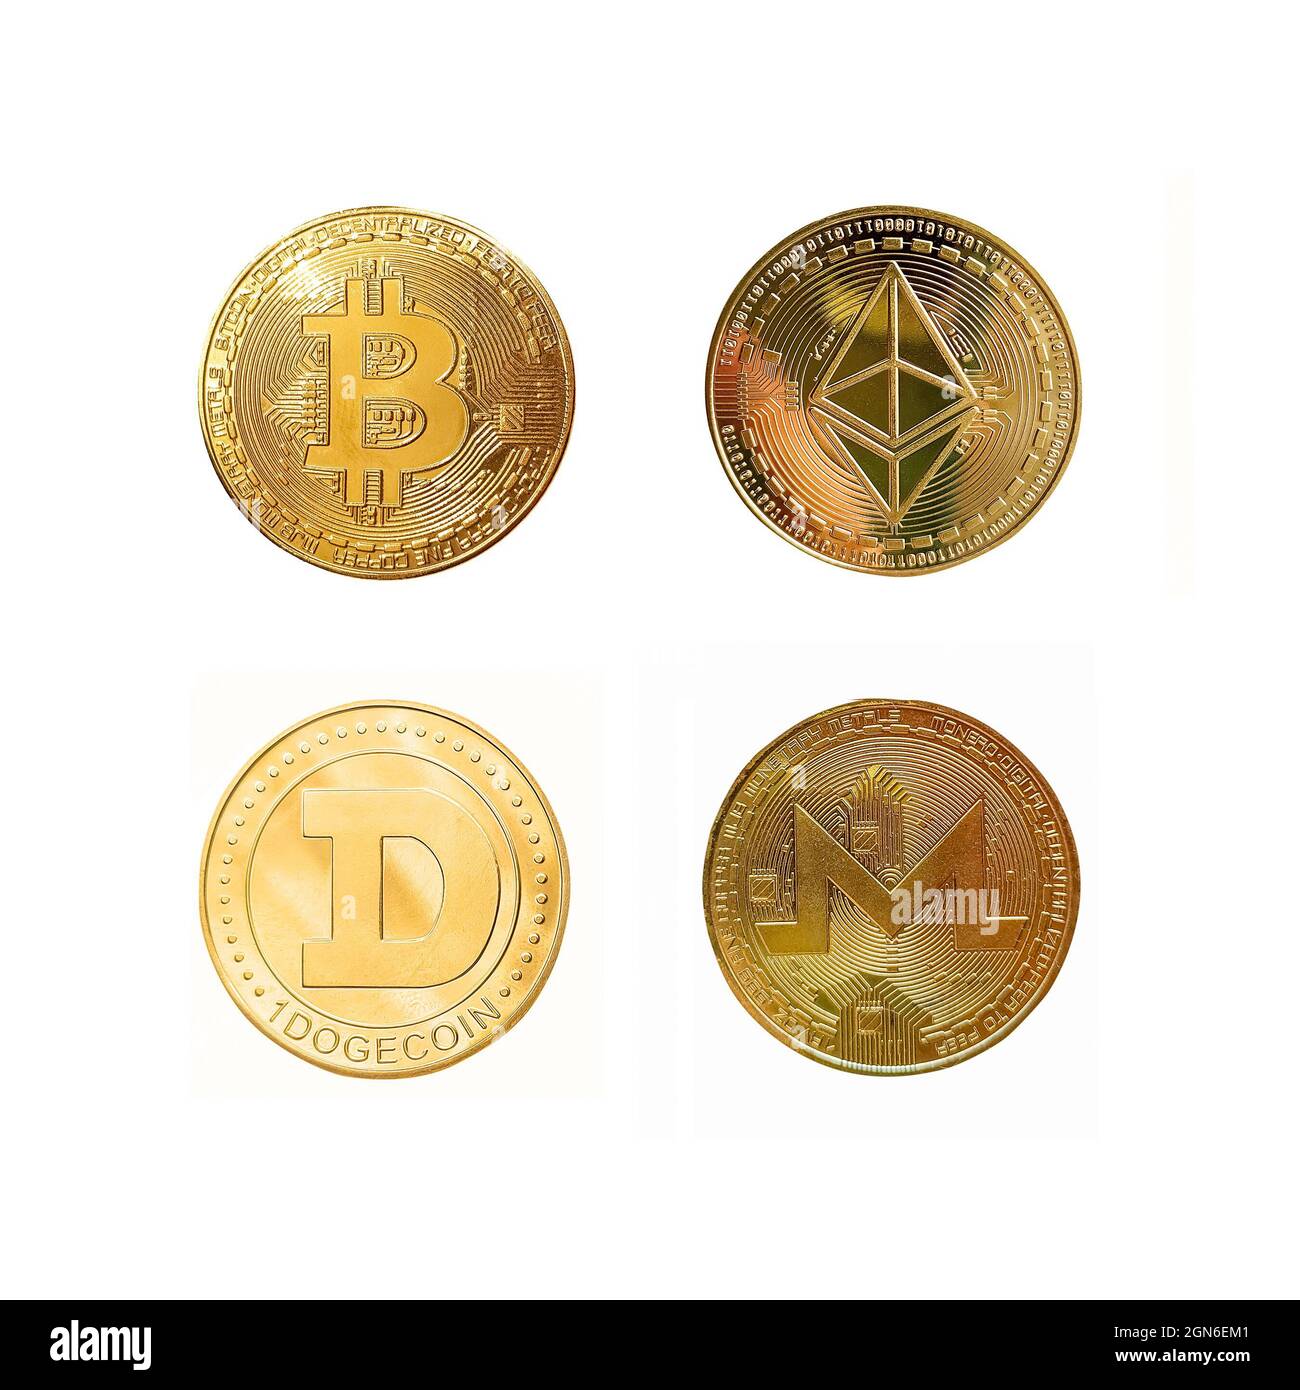 pop coin crypto